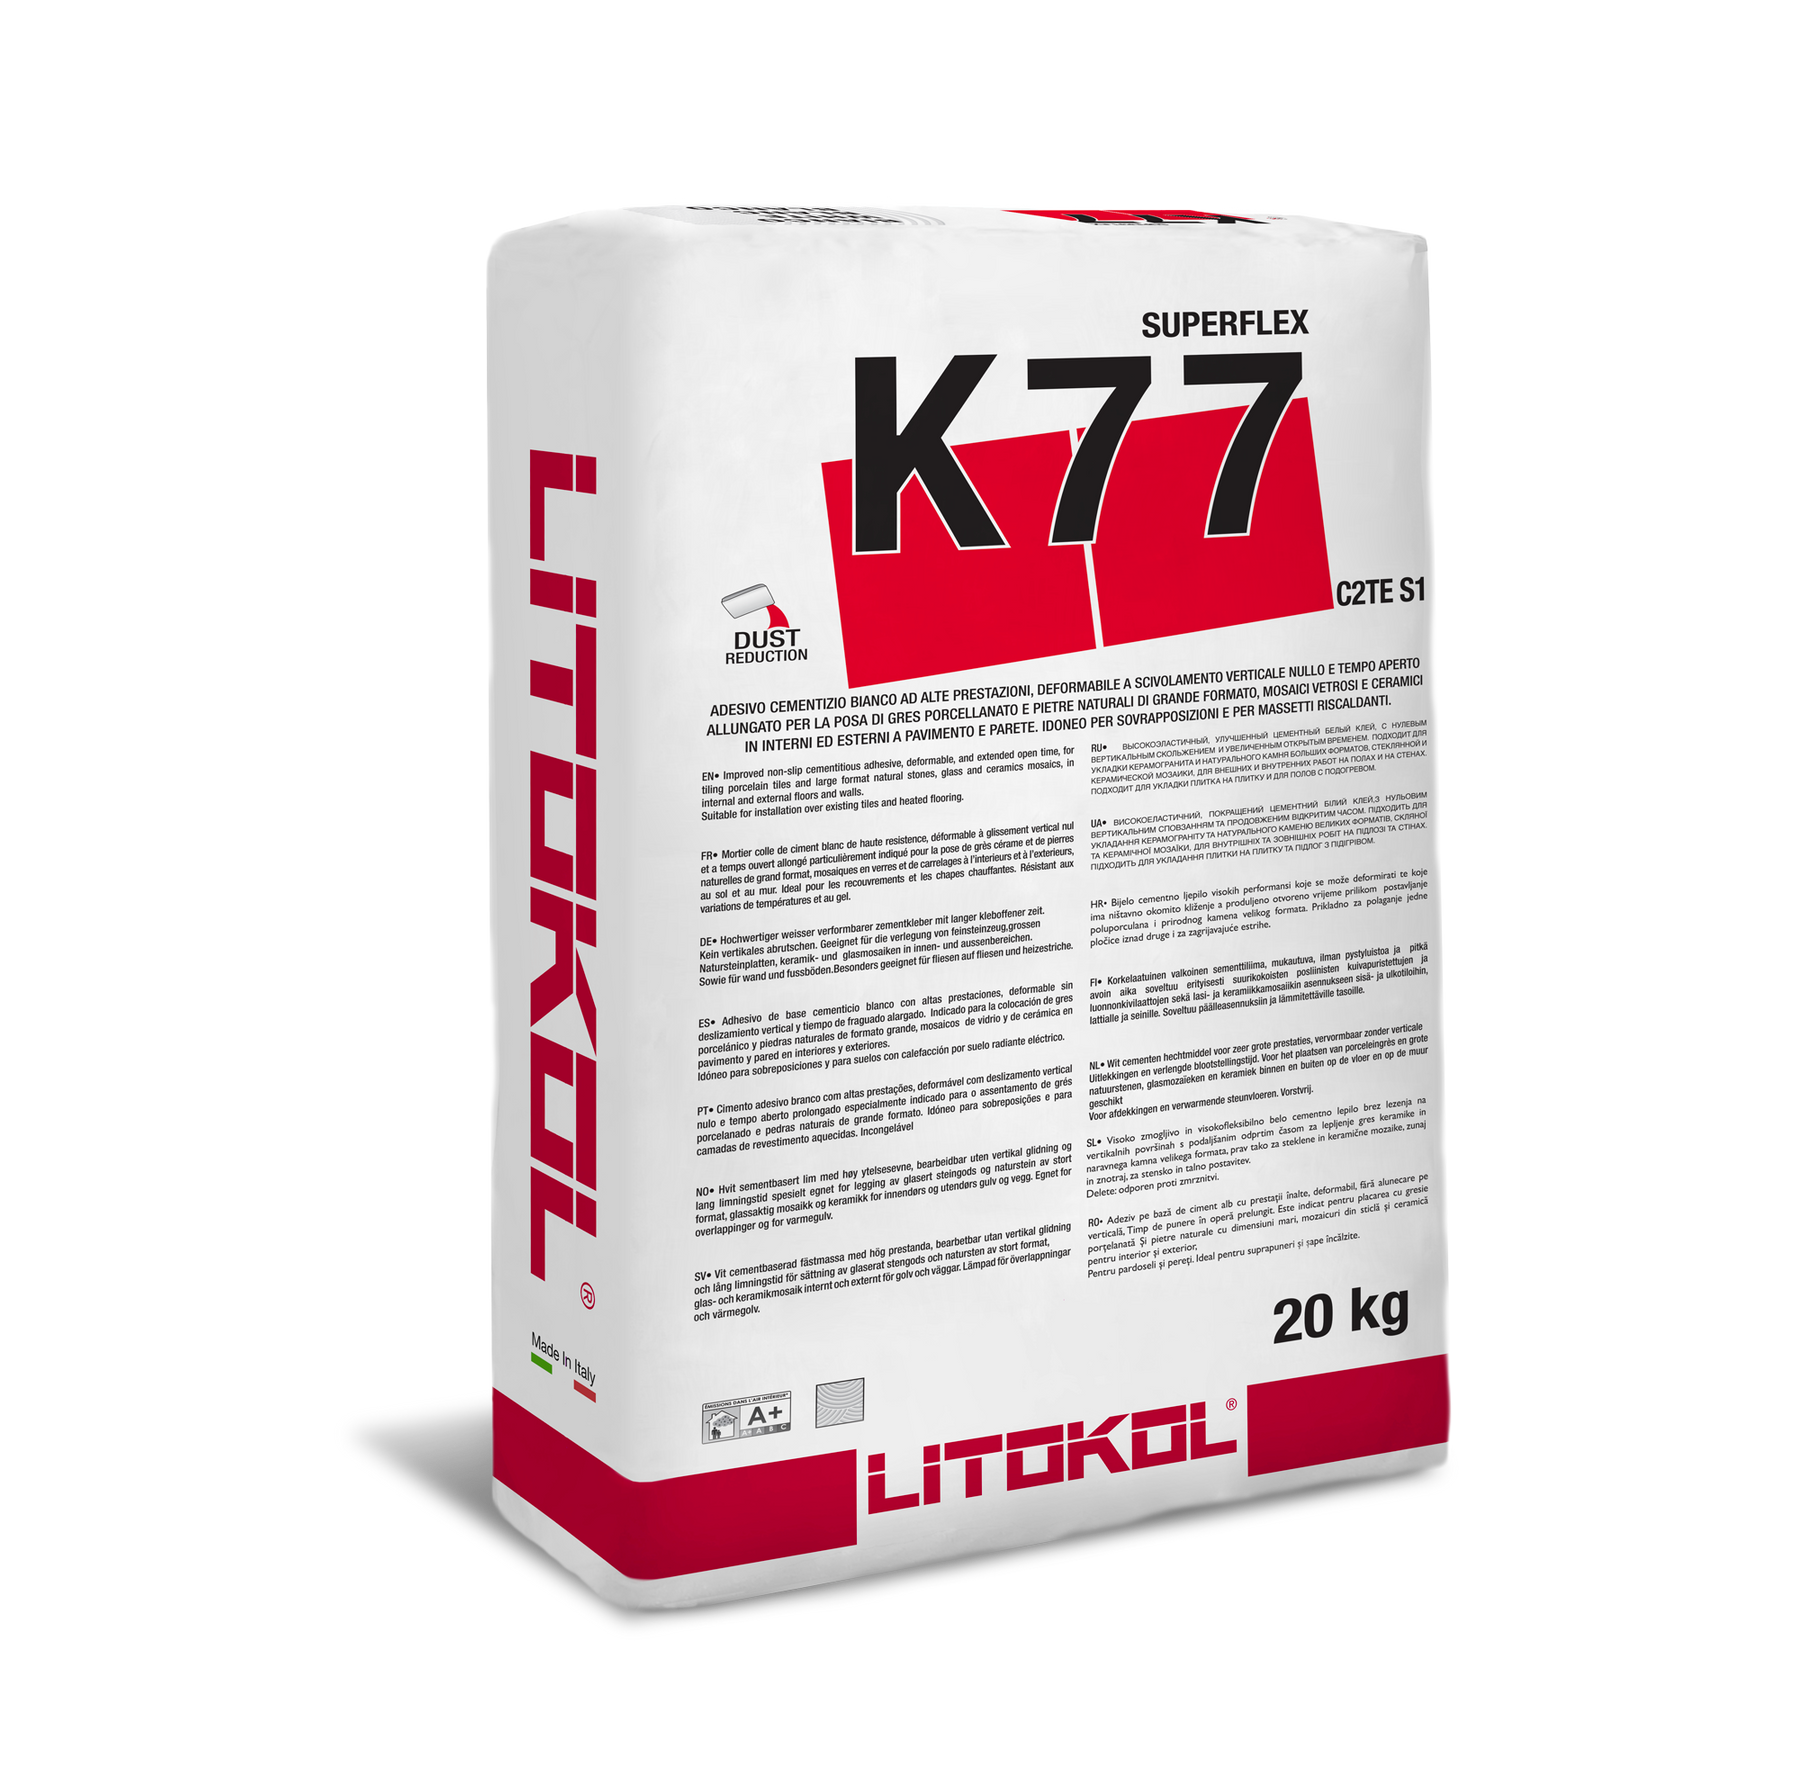 Герметик литокол. Litokol k77 Superflex. Клей для плитки Litokol Superflex k77. Клей Литокол к 77. Superflex k77 клеевая смесь.